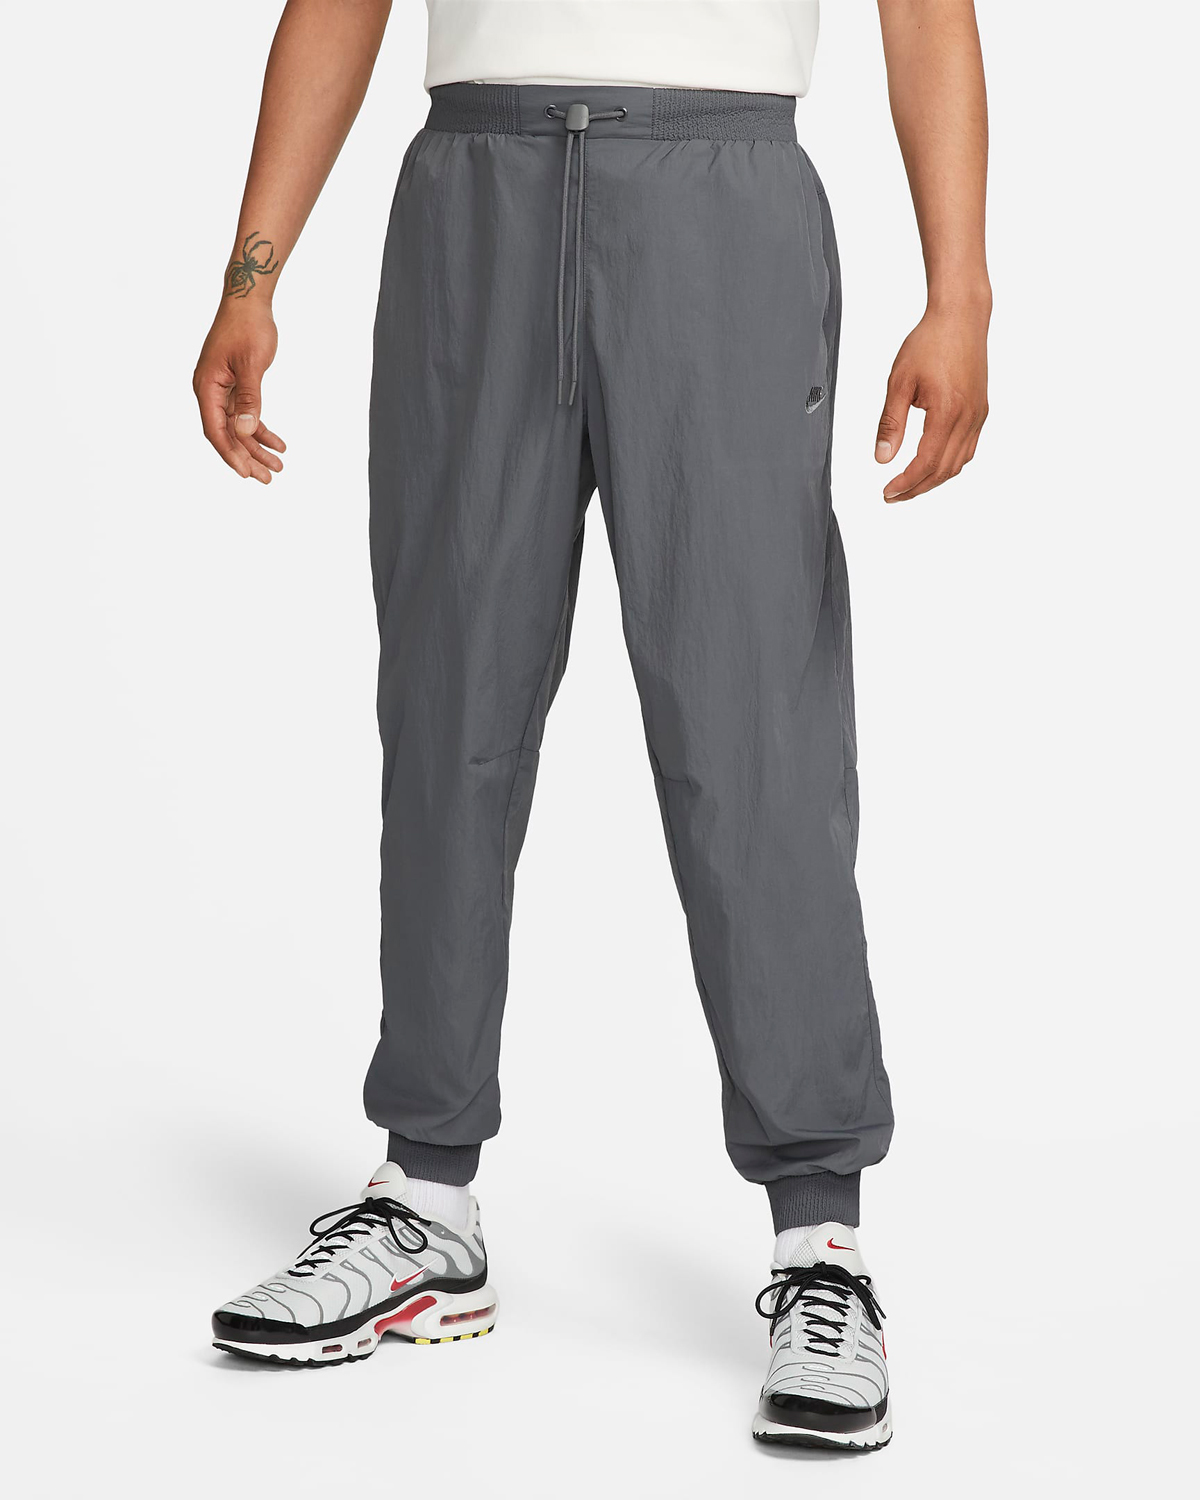 Nike-Sportswear-Tech-Pack-Repel-Woven-Pants